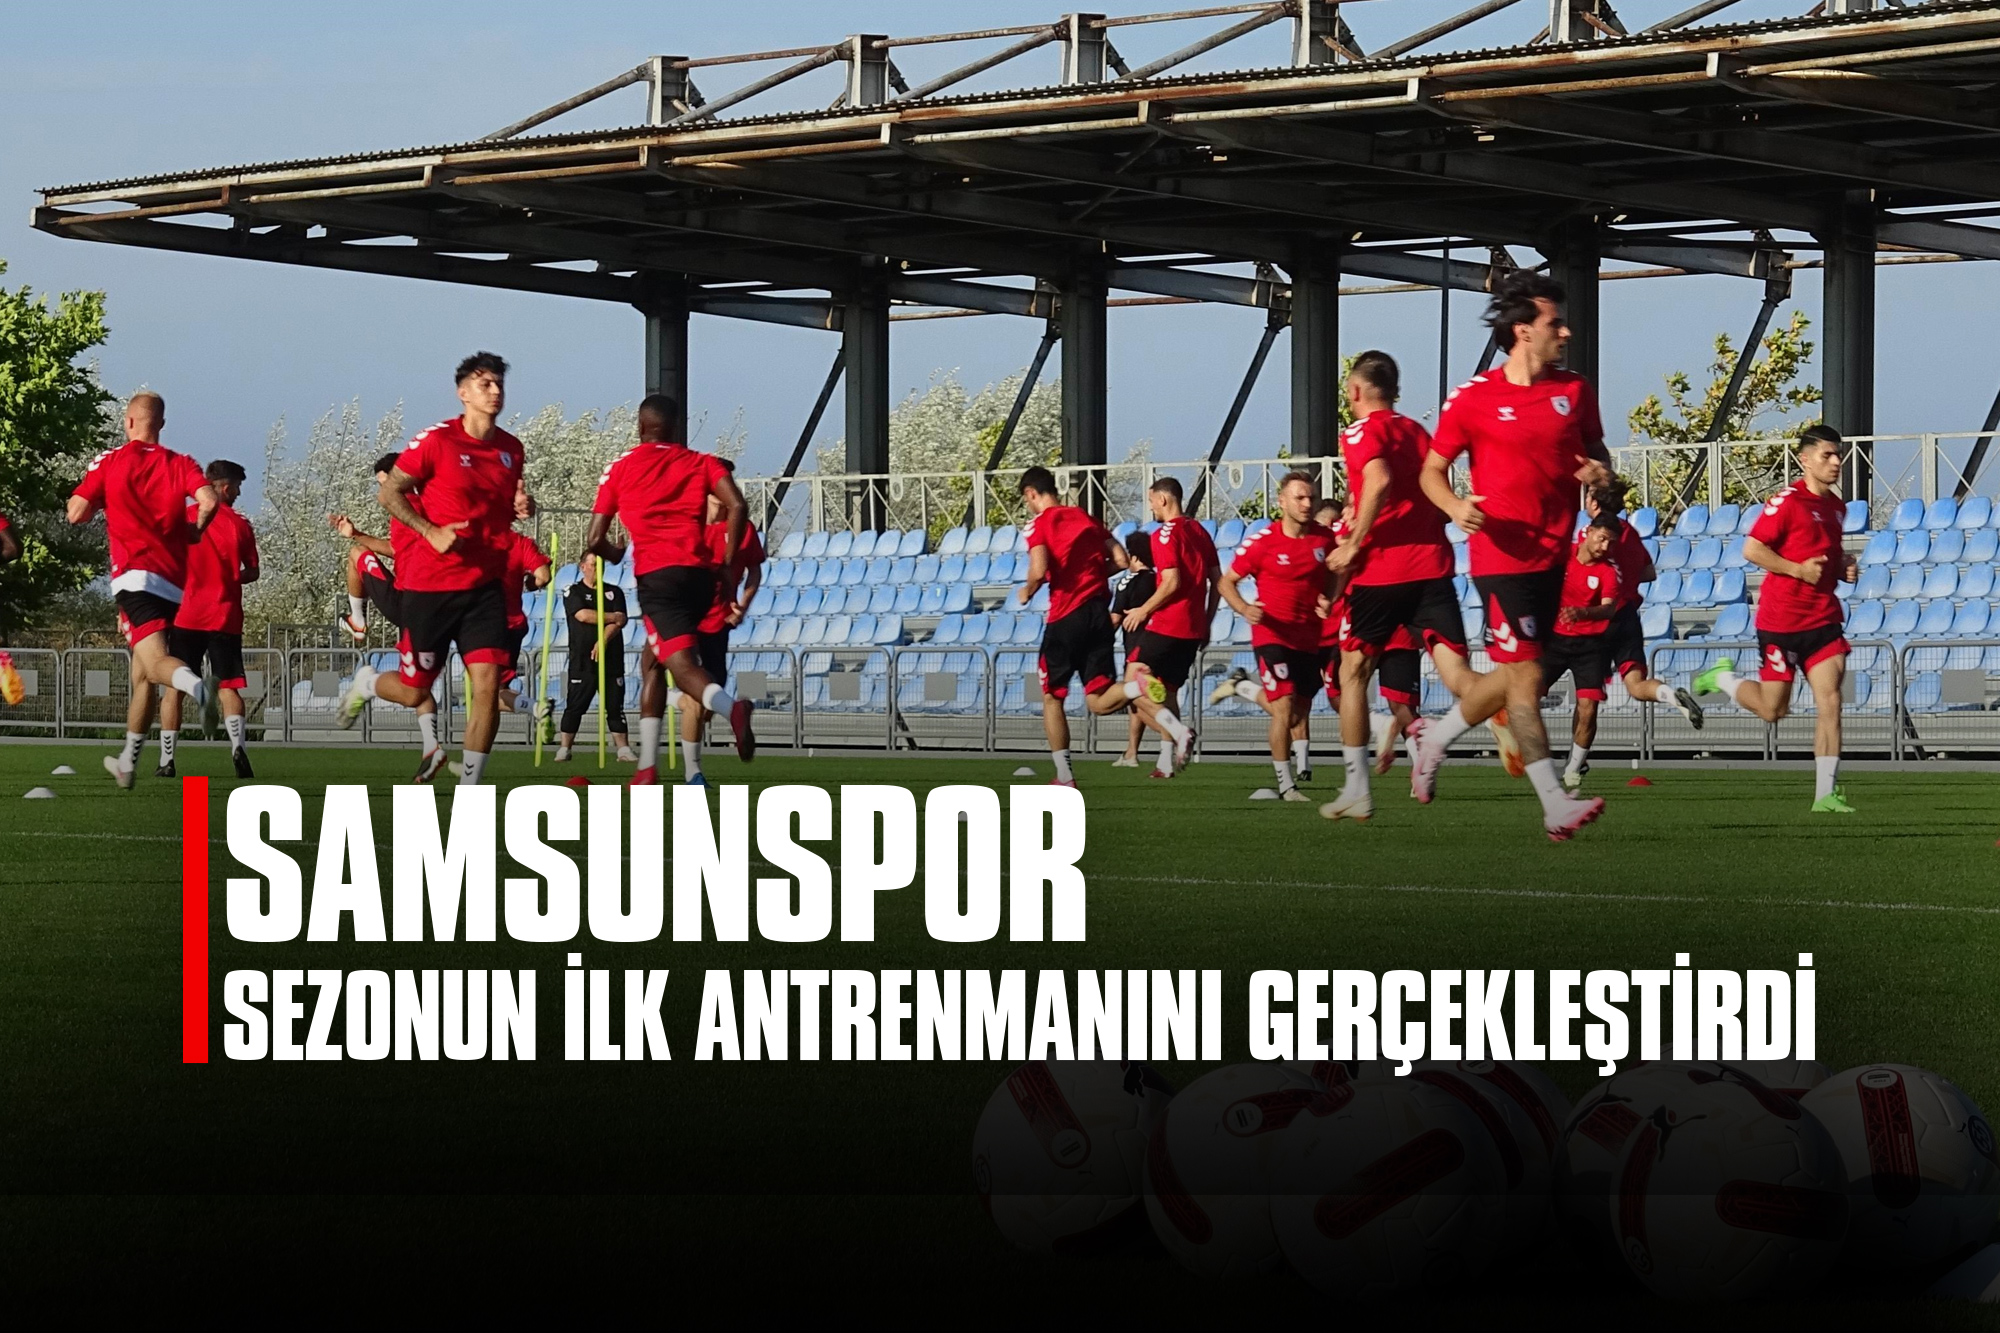 Samsunspor, Sezonun İlk Antrenmanını Gerçekleştirdi